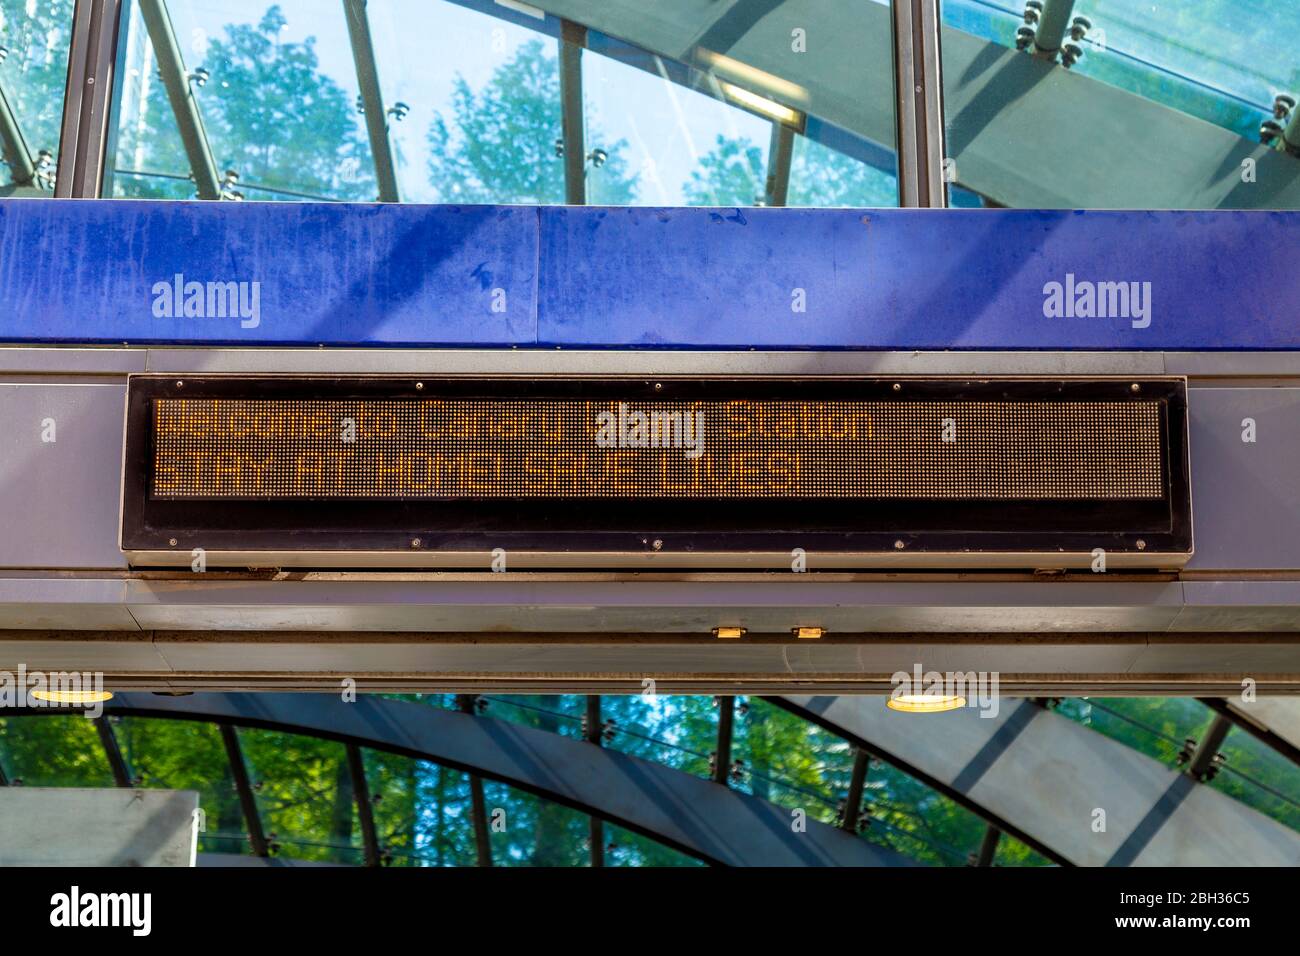 19 de abril de 2020 - Londres, Reino Unido, pantalla LED en la entrada de la estación de metro Canary Wharf que dice "Stay at home, save Lives" durante el bloqueo de la pandemia de Coronavirus Foto de stock